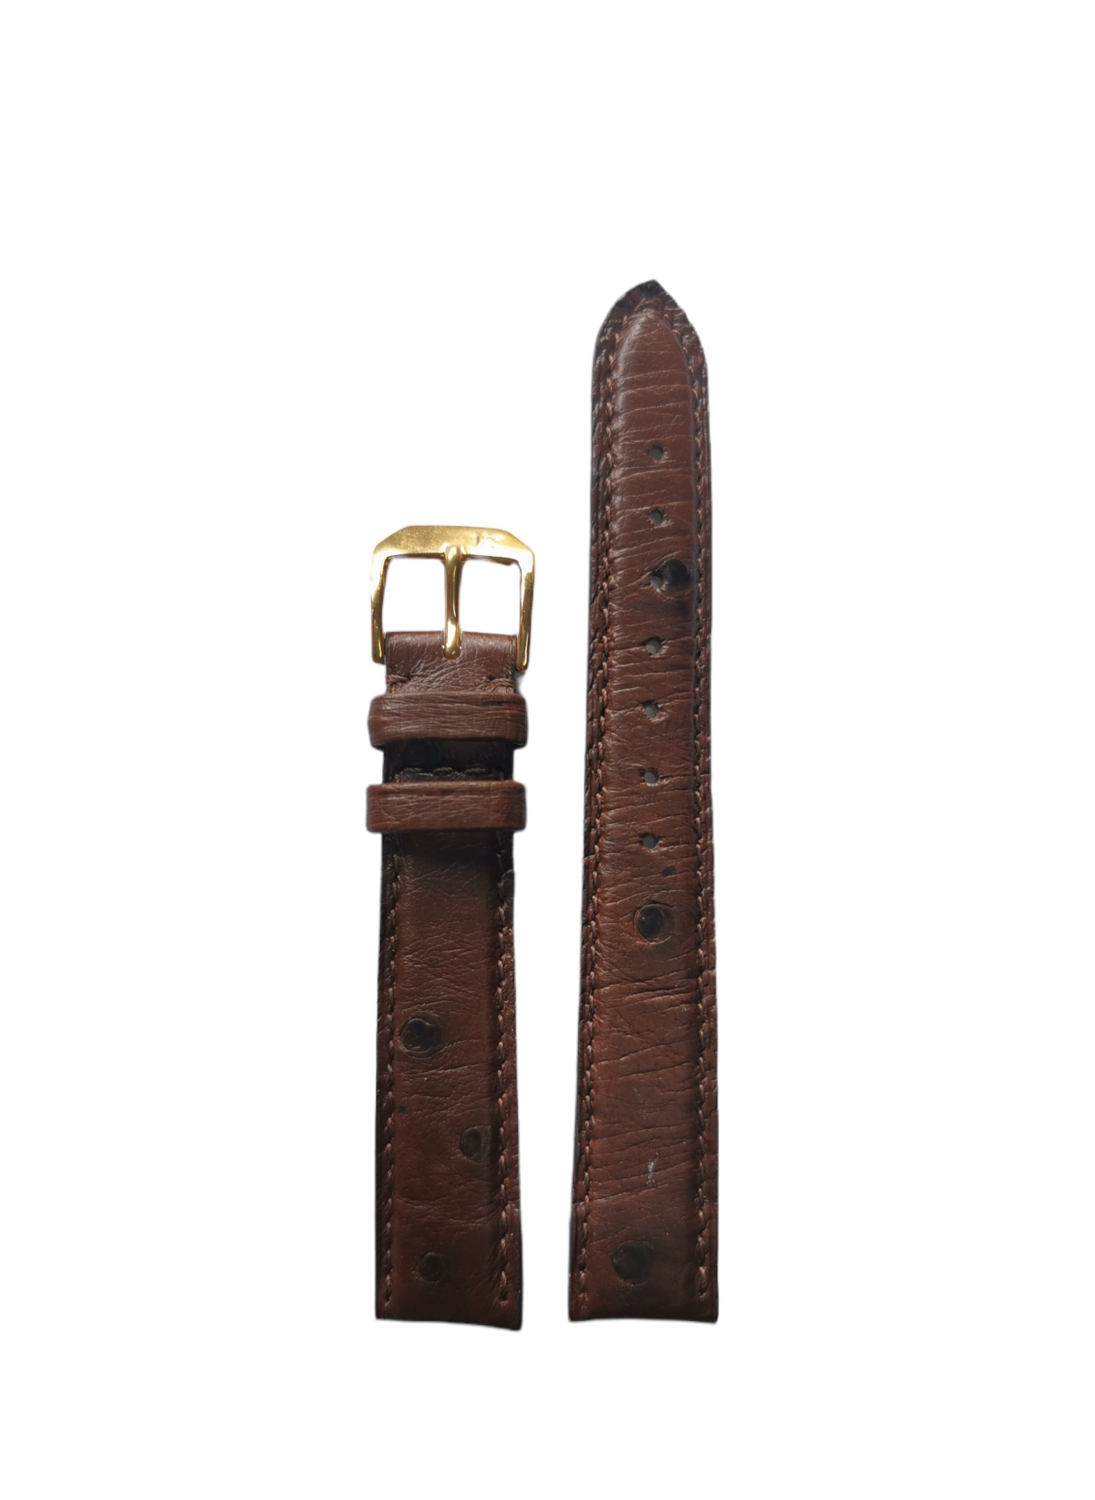 Original Gübelin Uhrenband, Strauss, Havanna Braun, 16 mm Breite